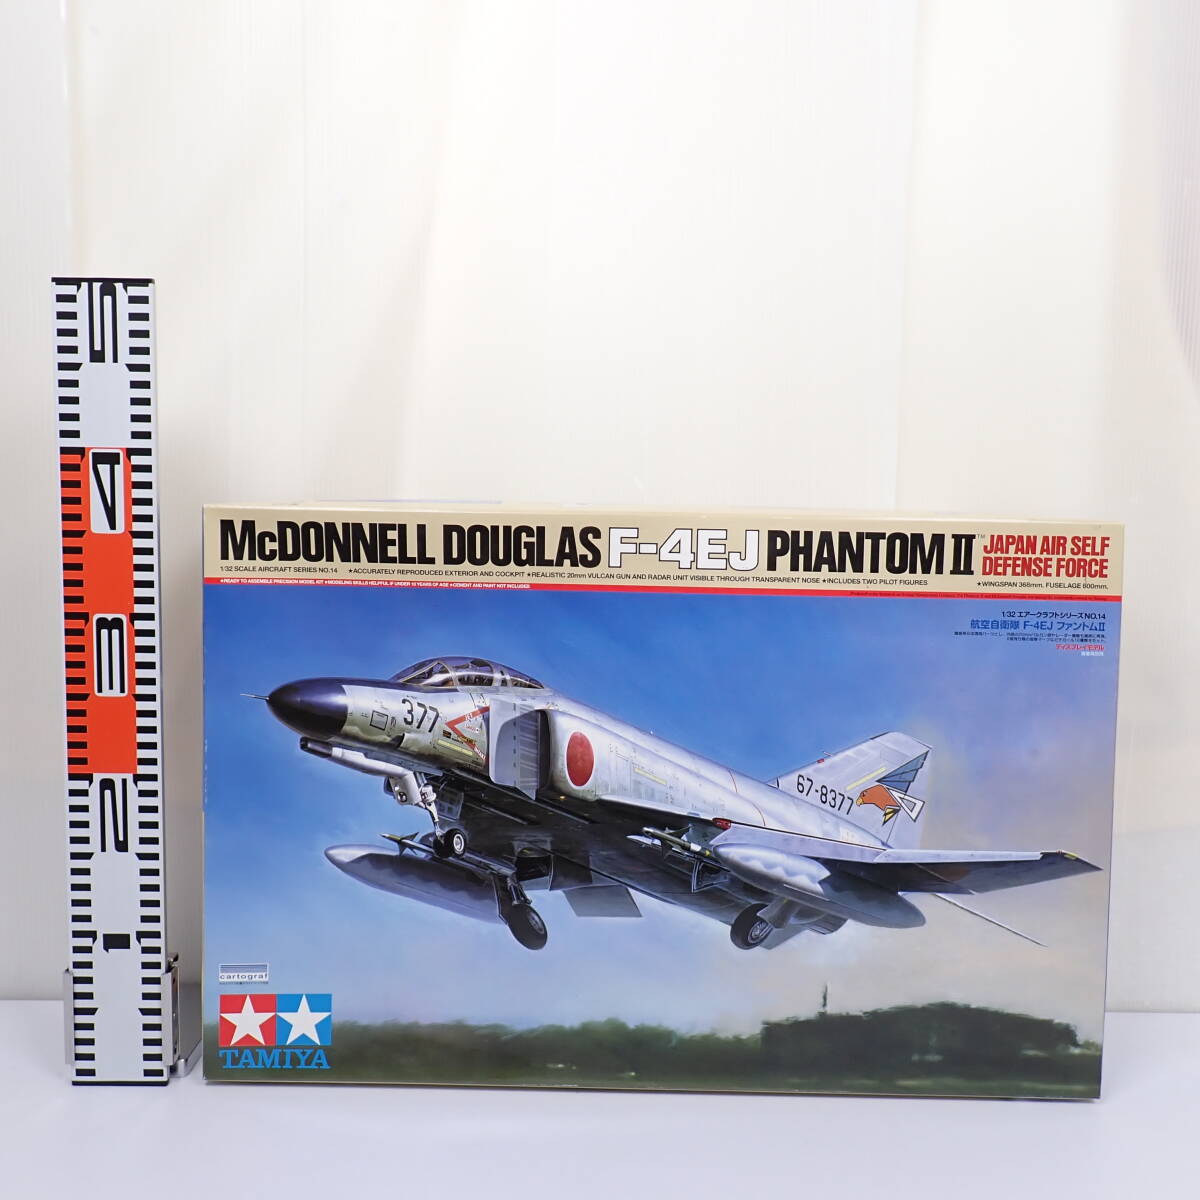  не собран 1/32 авиация собственный ..F-4EJ Phantom II McDONNELL DOUGLAS PHANTOM2 воздушный craft серии No.14 Tamiya 